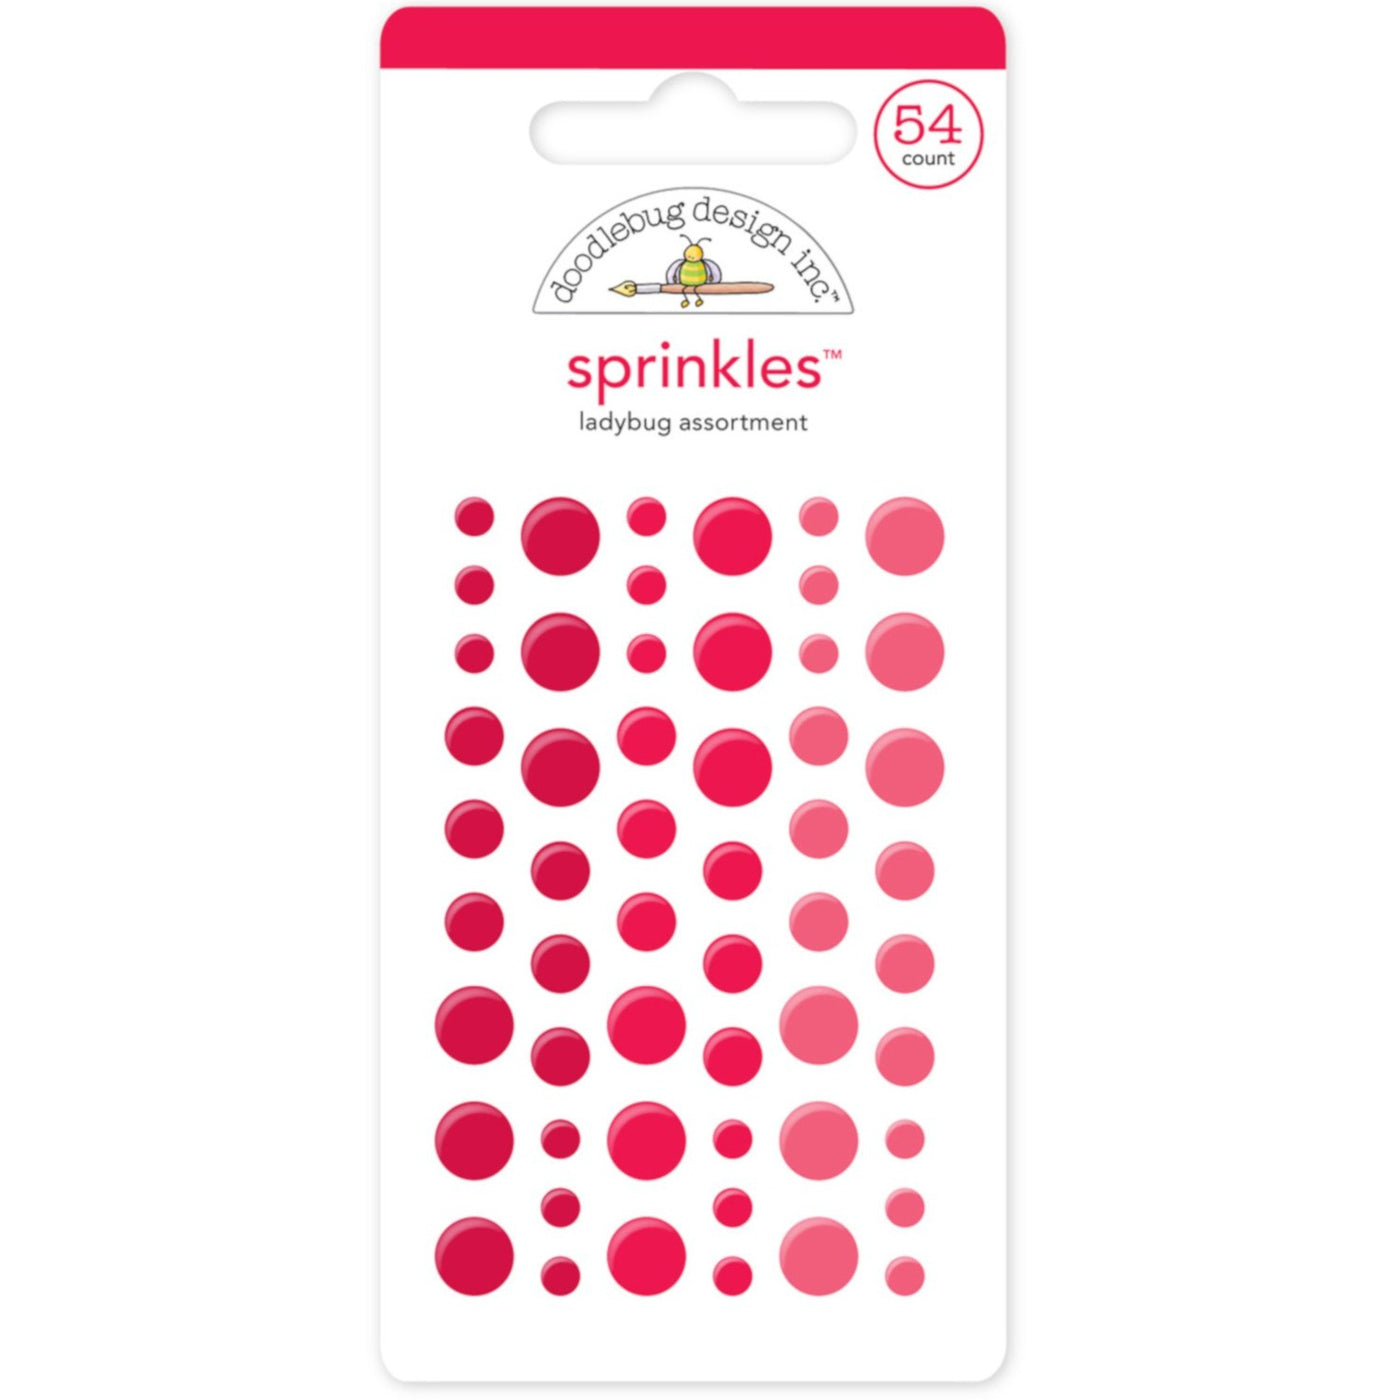 LADYBUG SPRINKLES - 54 pink and taffy colored enamel dots from Doodlebug Design 